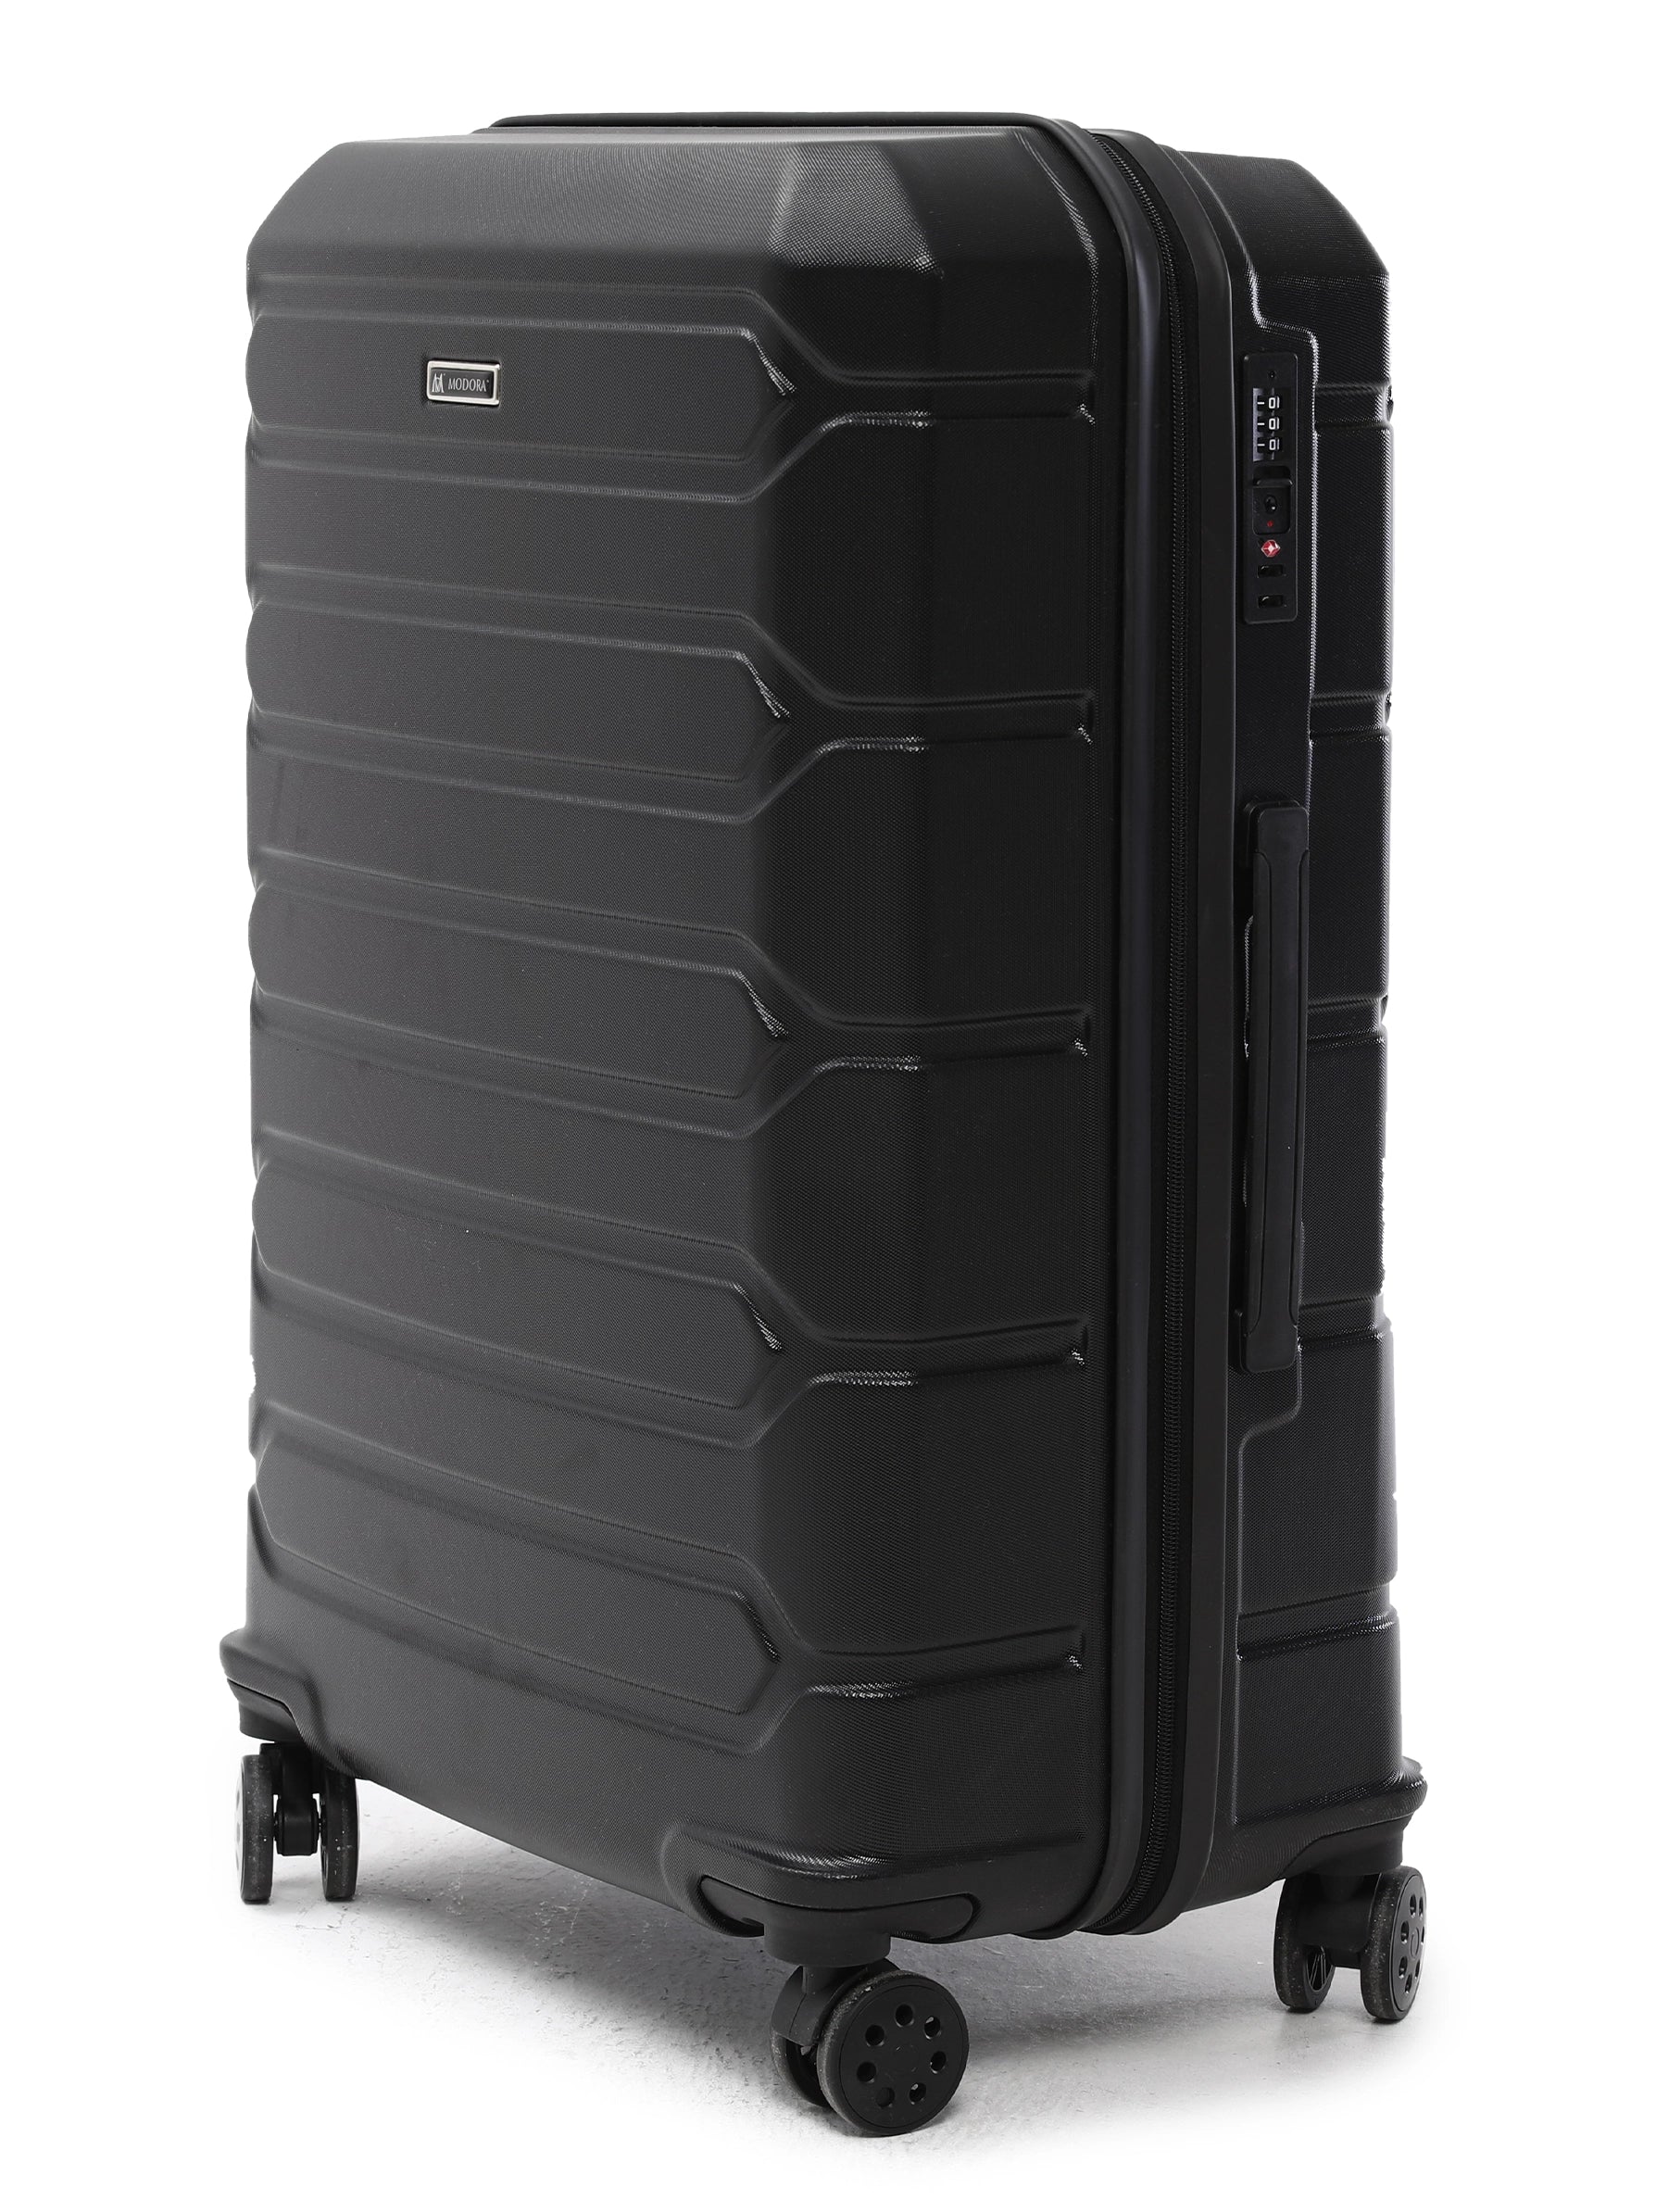 Large black suitcase